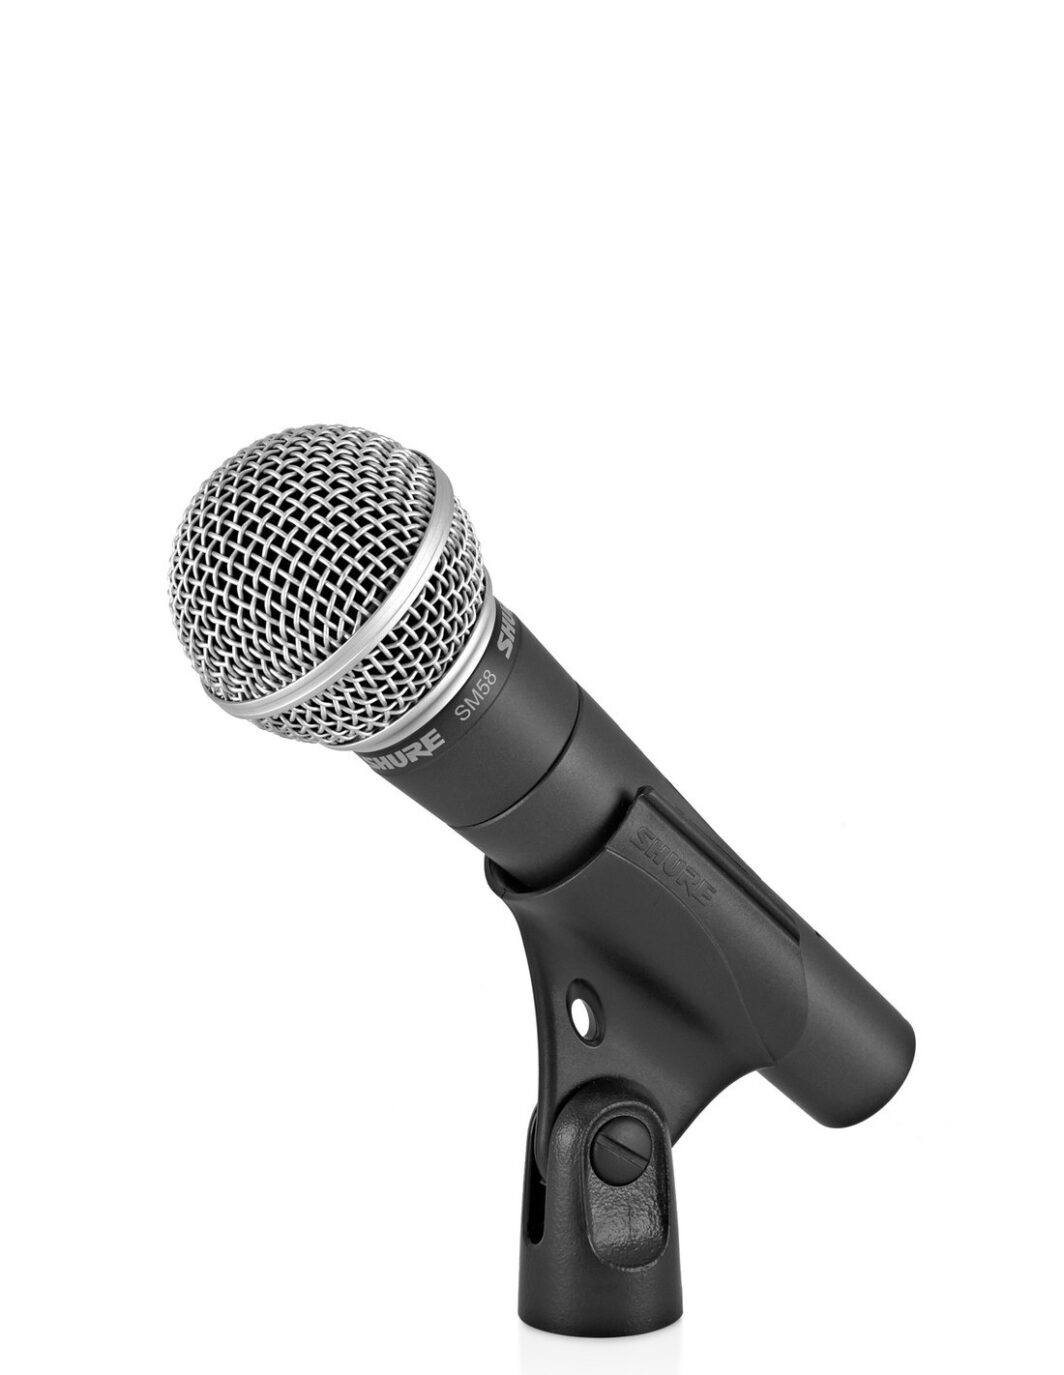 Shure SM58 Microfono Dinamico Cardioide per Voce